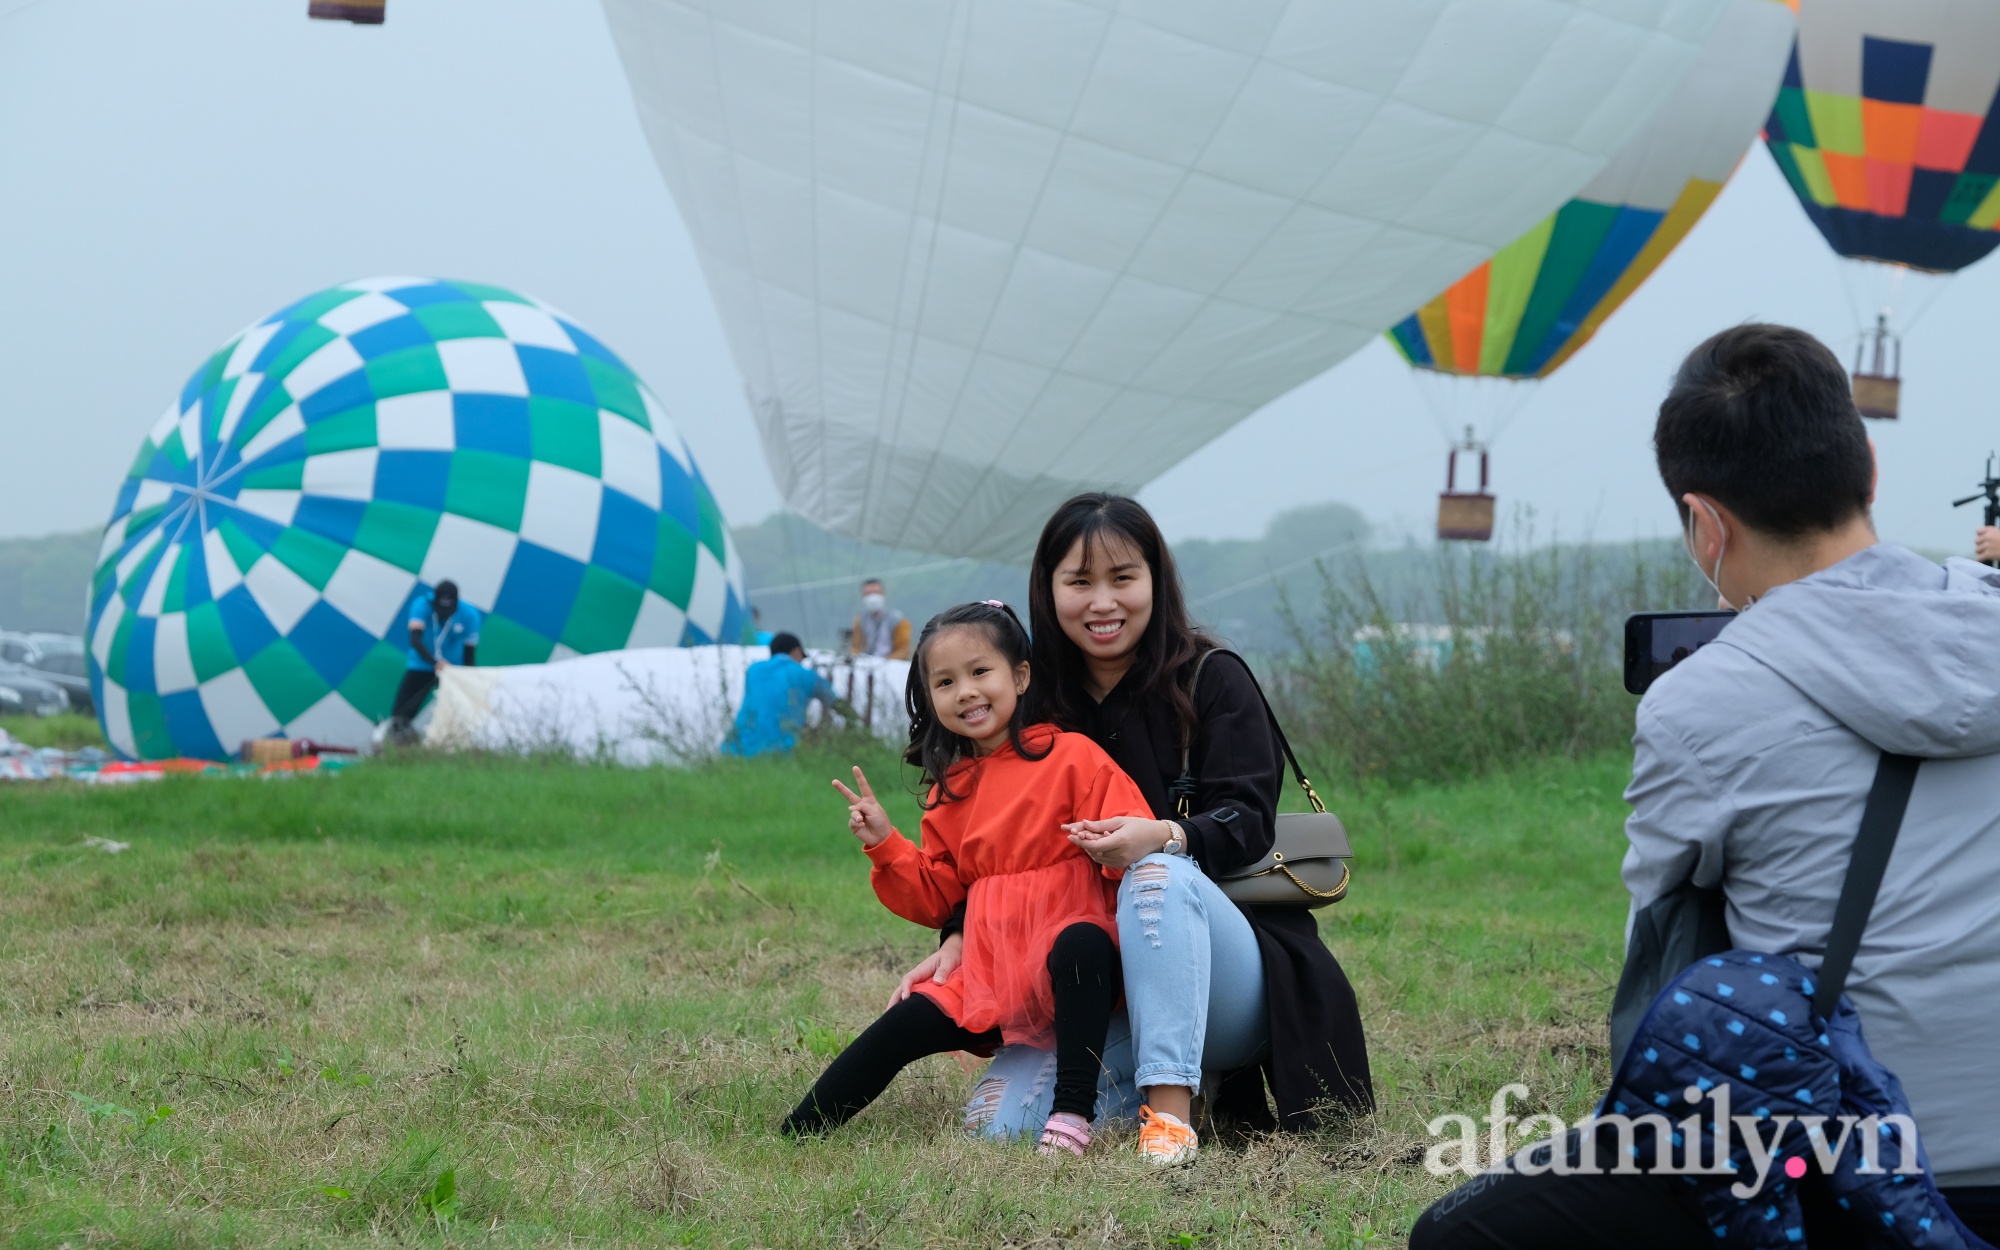 Lần đầu tiên tổ chức Ngày hội khinh khí cầu tại Hà Nội: Nhanh chân đến để trải nghiệm khoảnh khắc hiếm có ngắm thành phố từ trên cao - Ảnh 8.